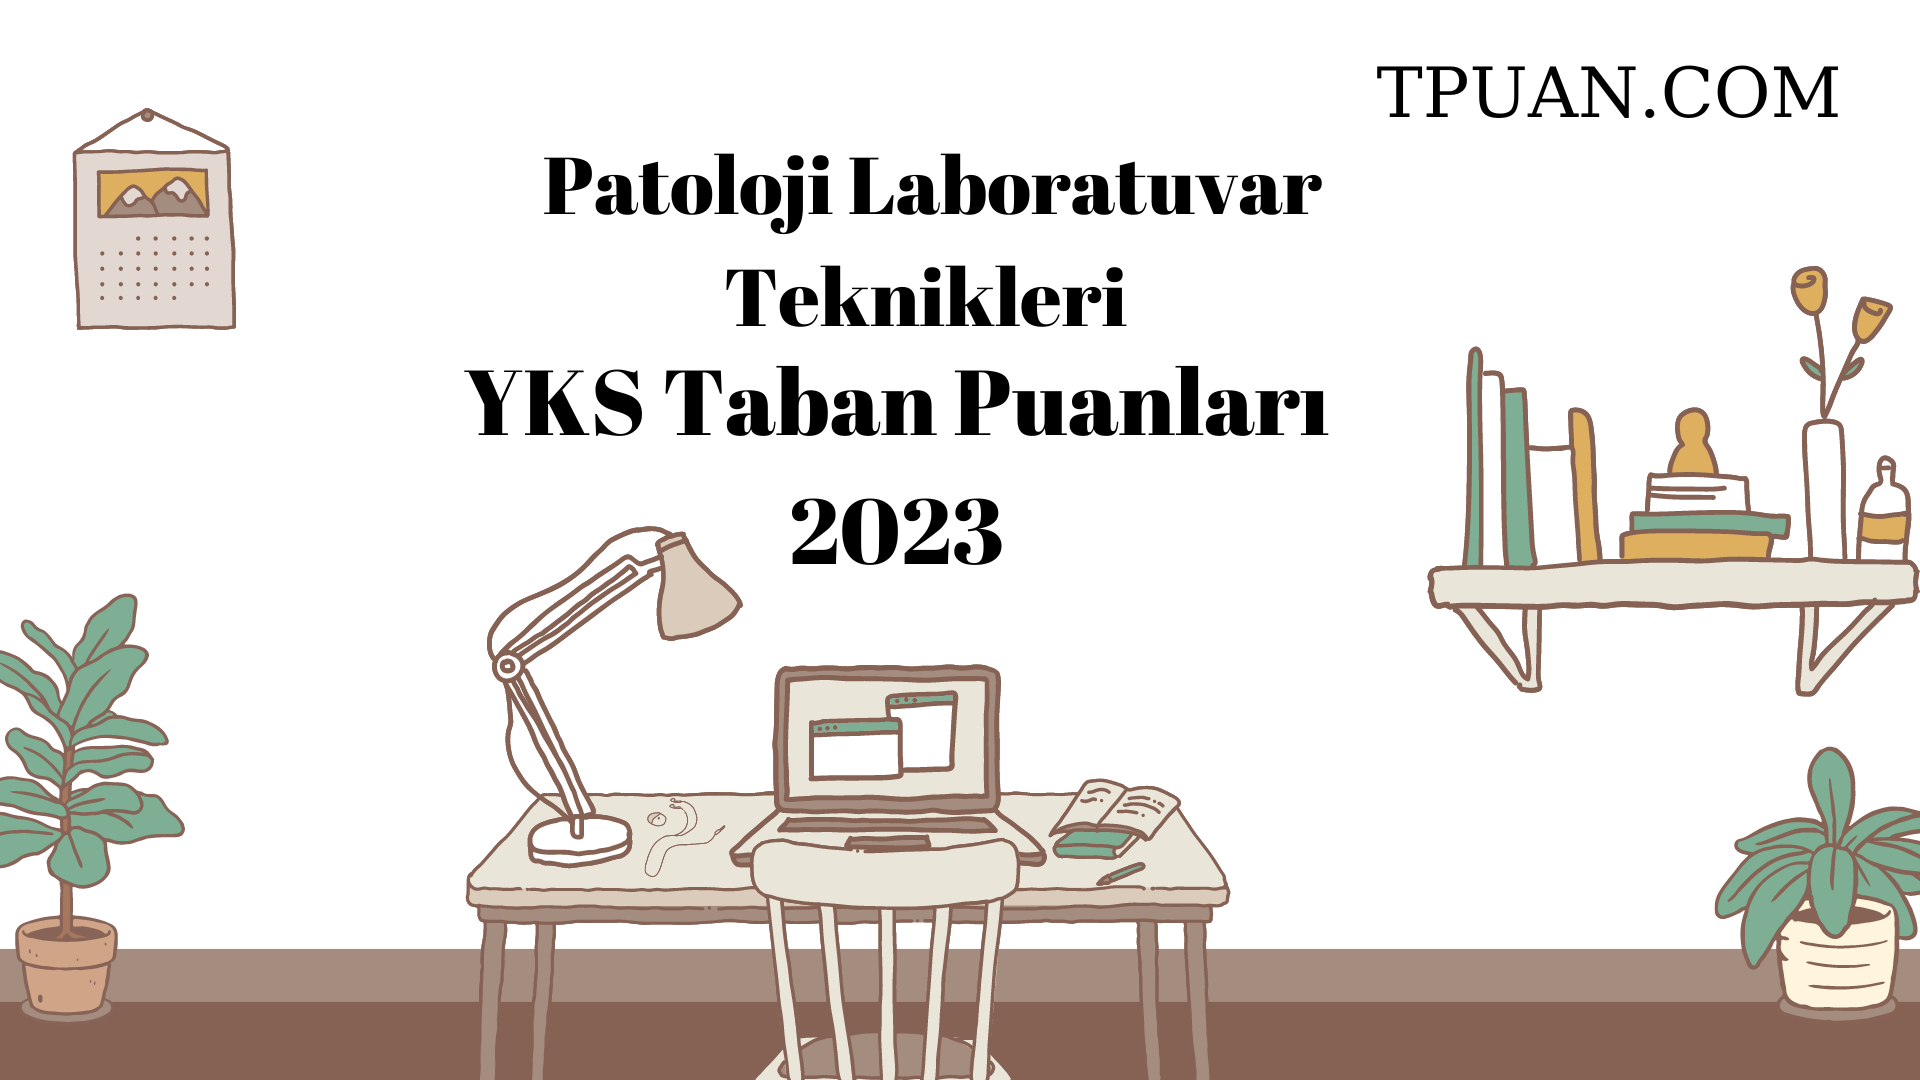  Patoloji Laboratuvar Teknikleri YKS Taban Puanları 2023